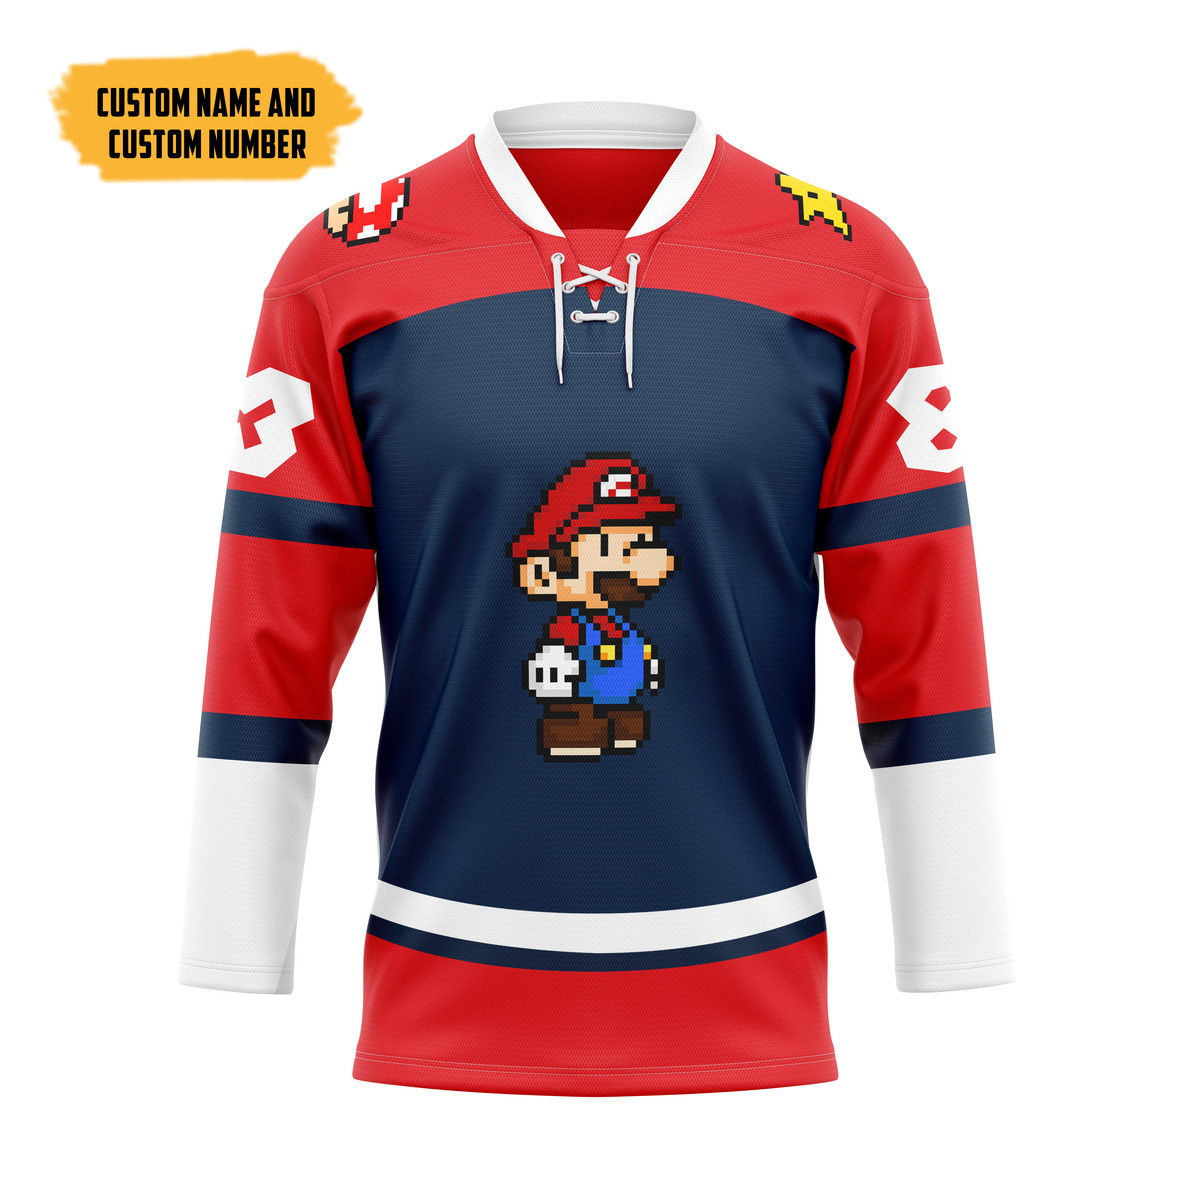 The Best Hockey Jersey Shirt 138